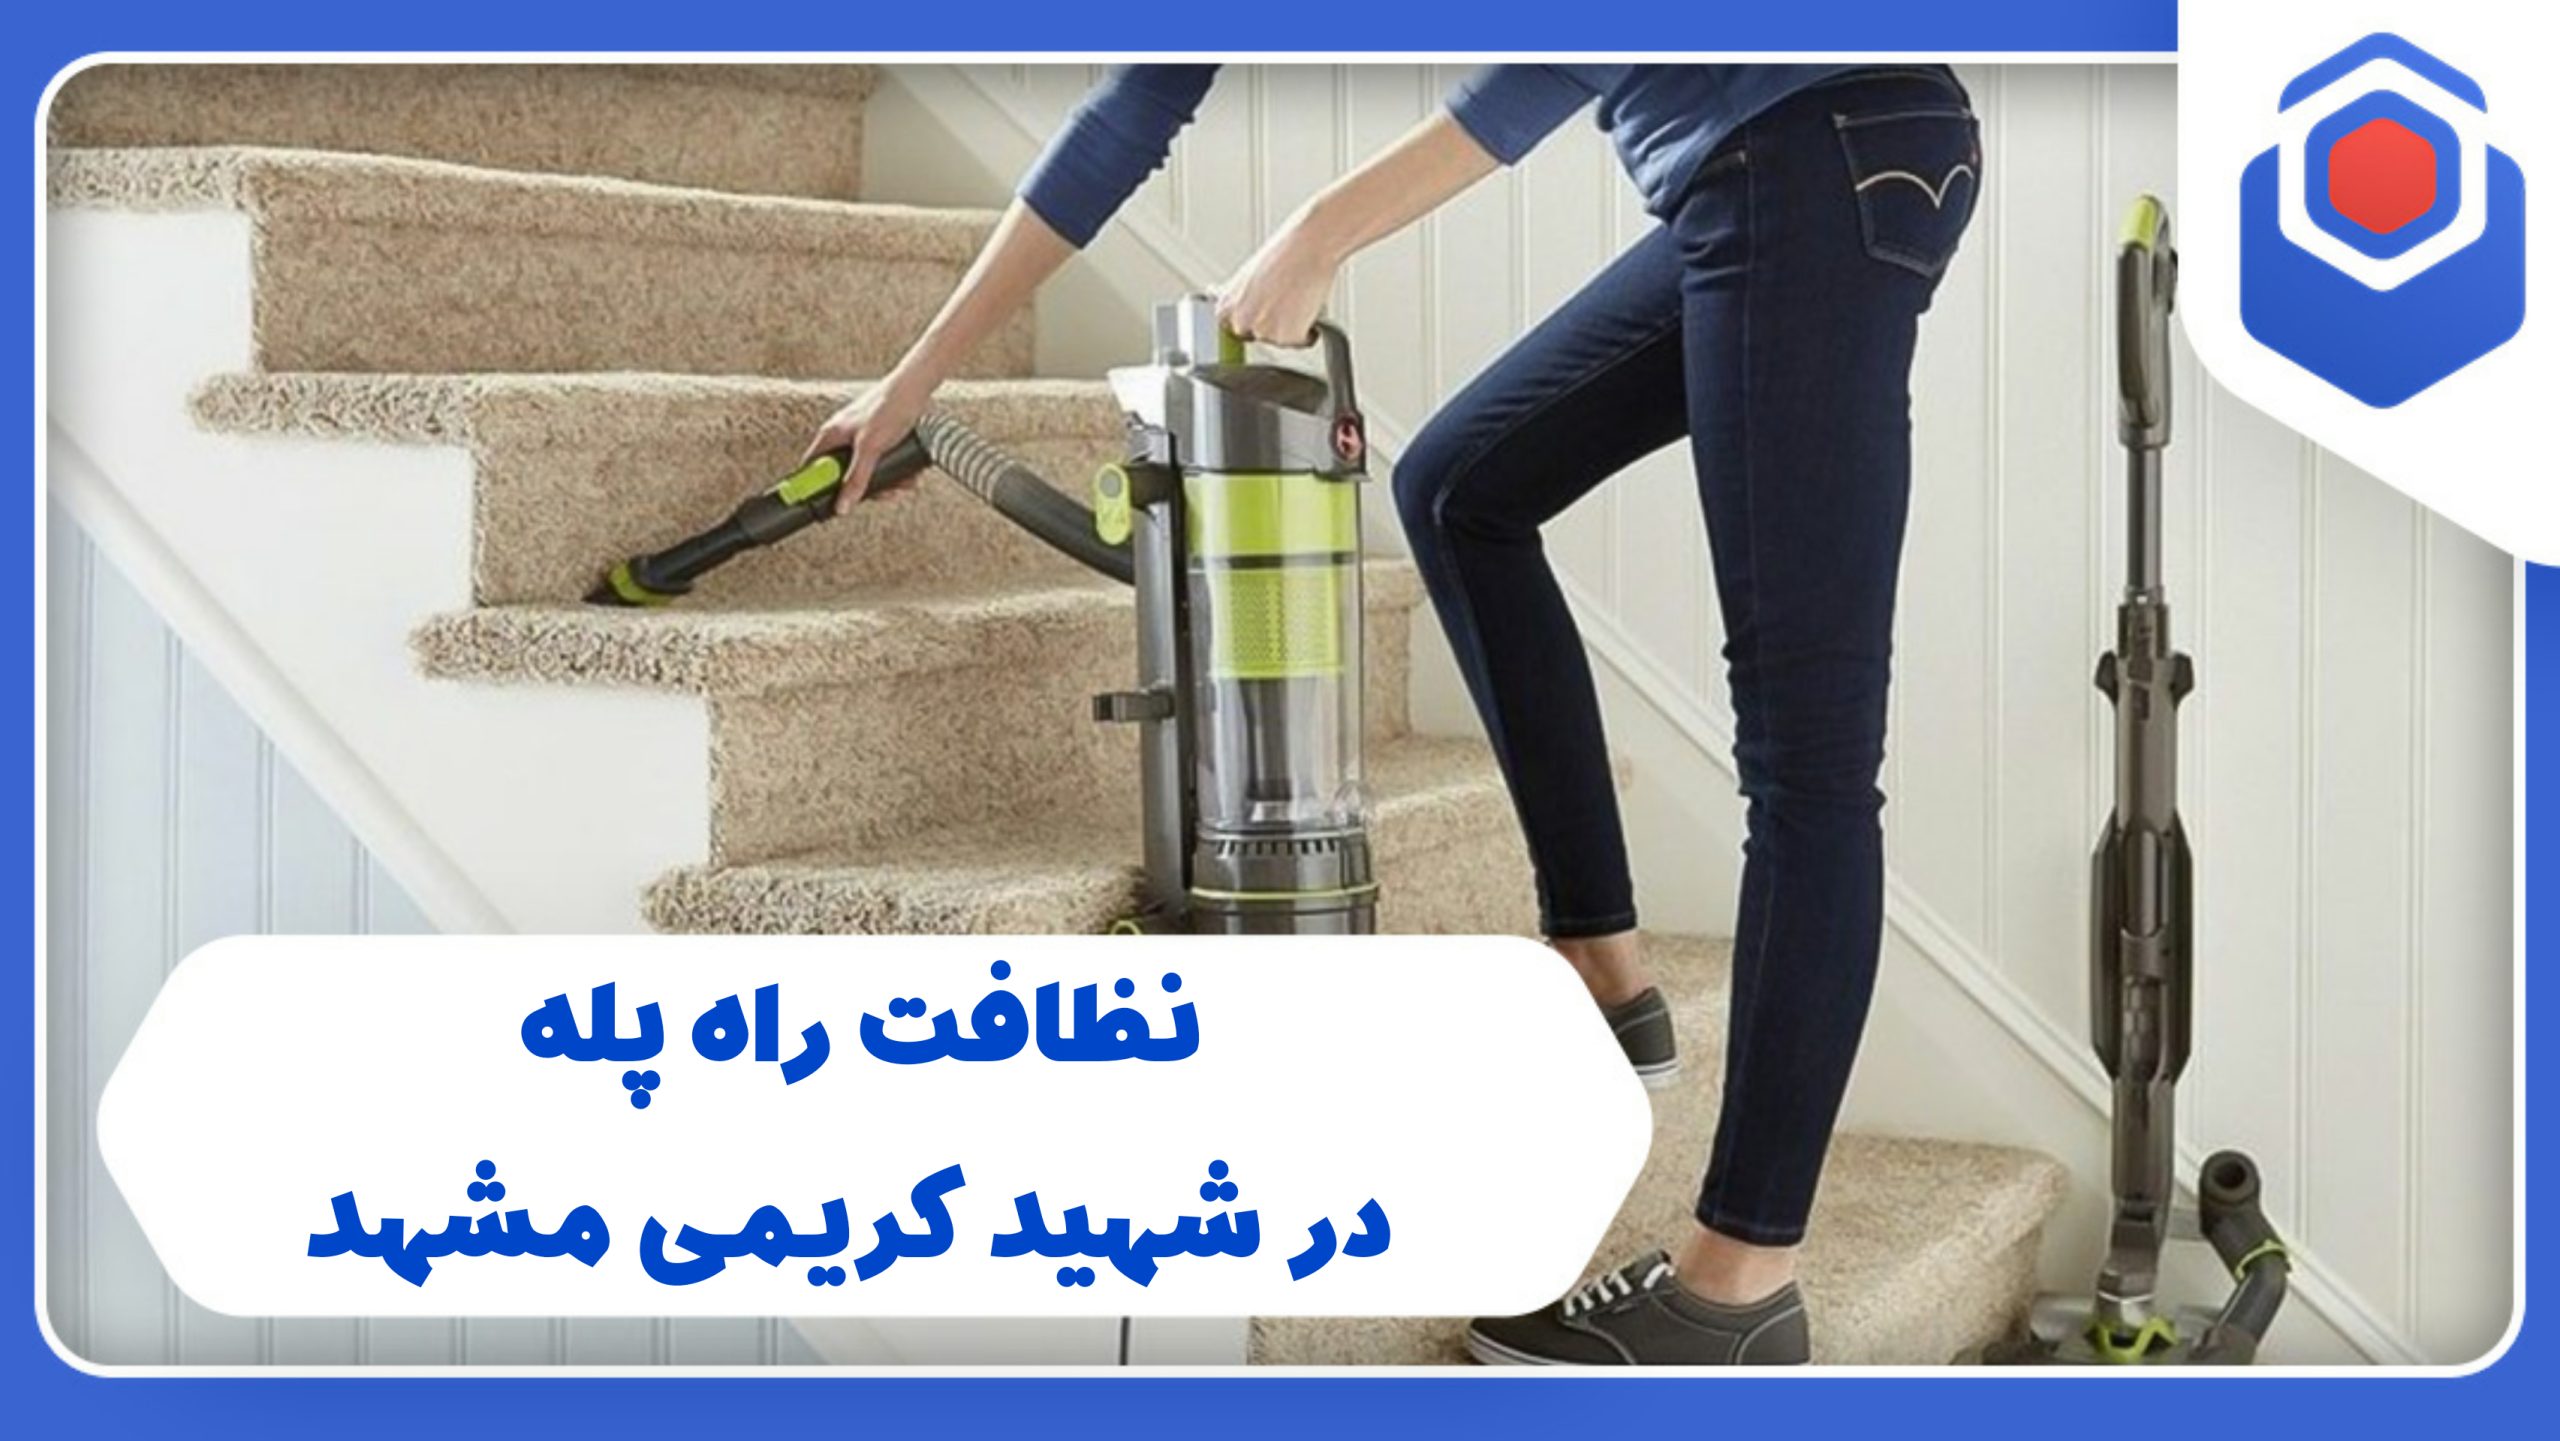 شرکت نظافت راه پله در شهید کریمی مشهد